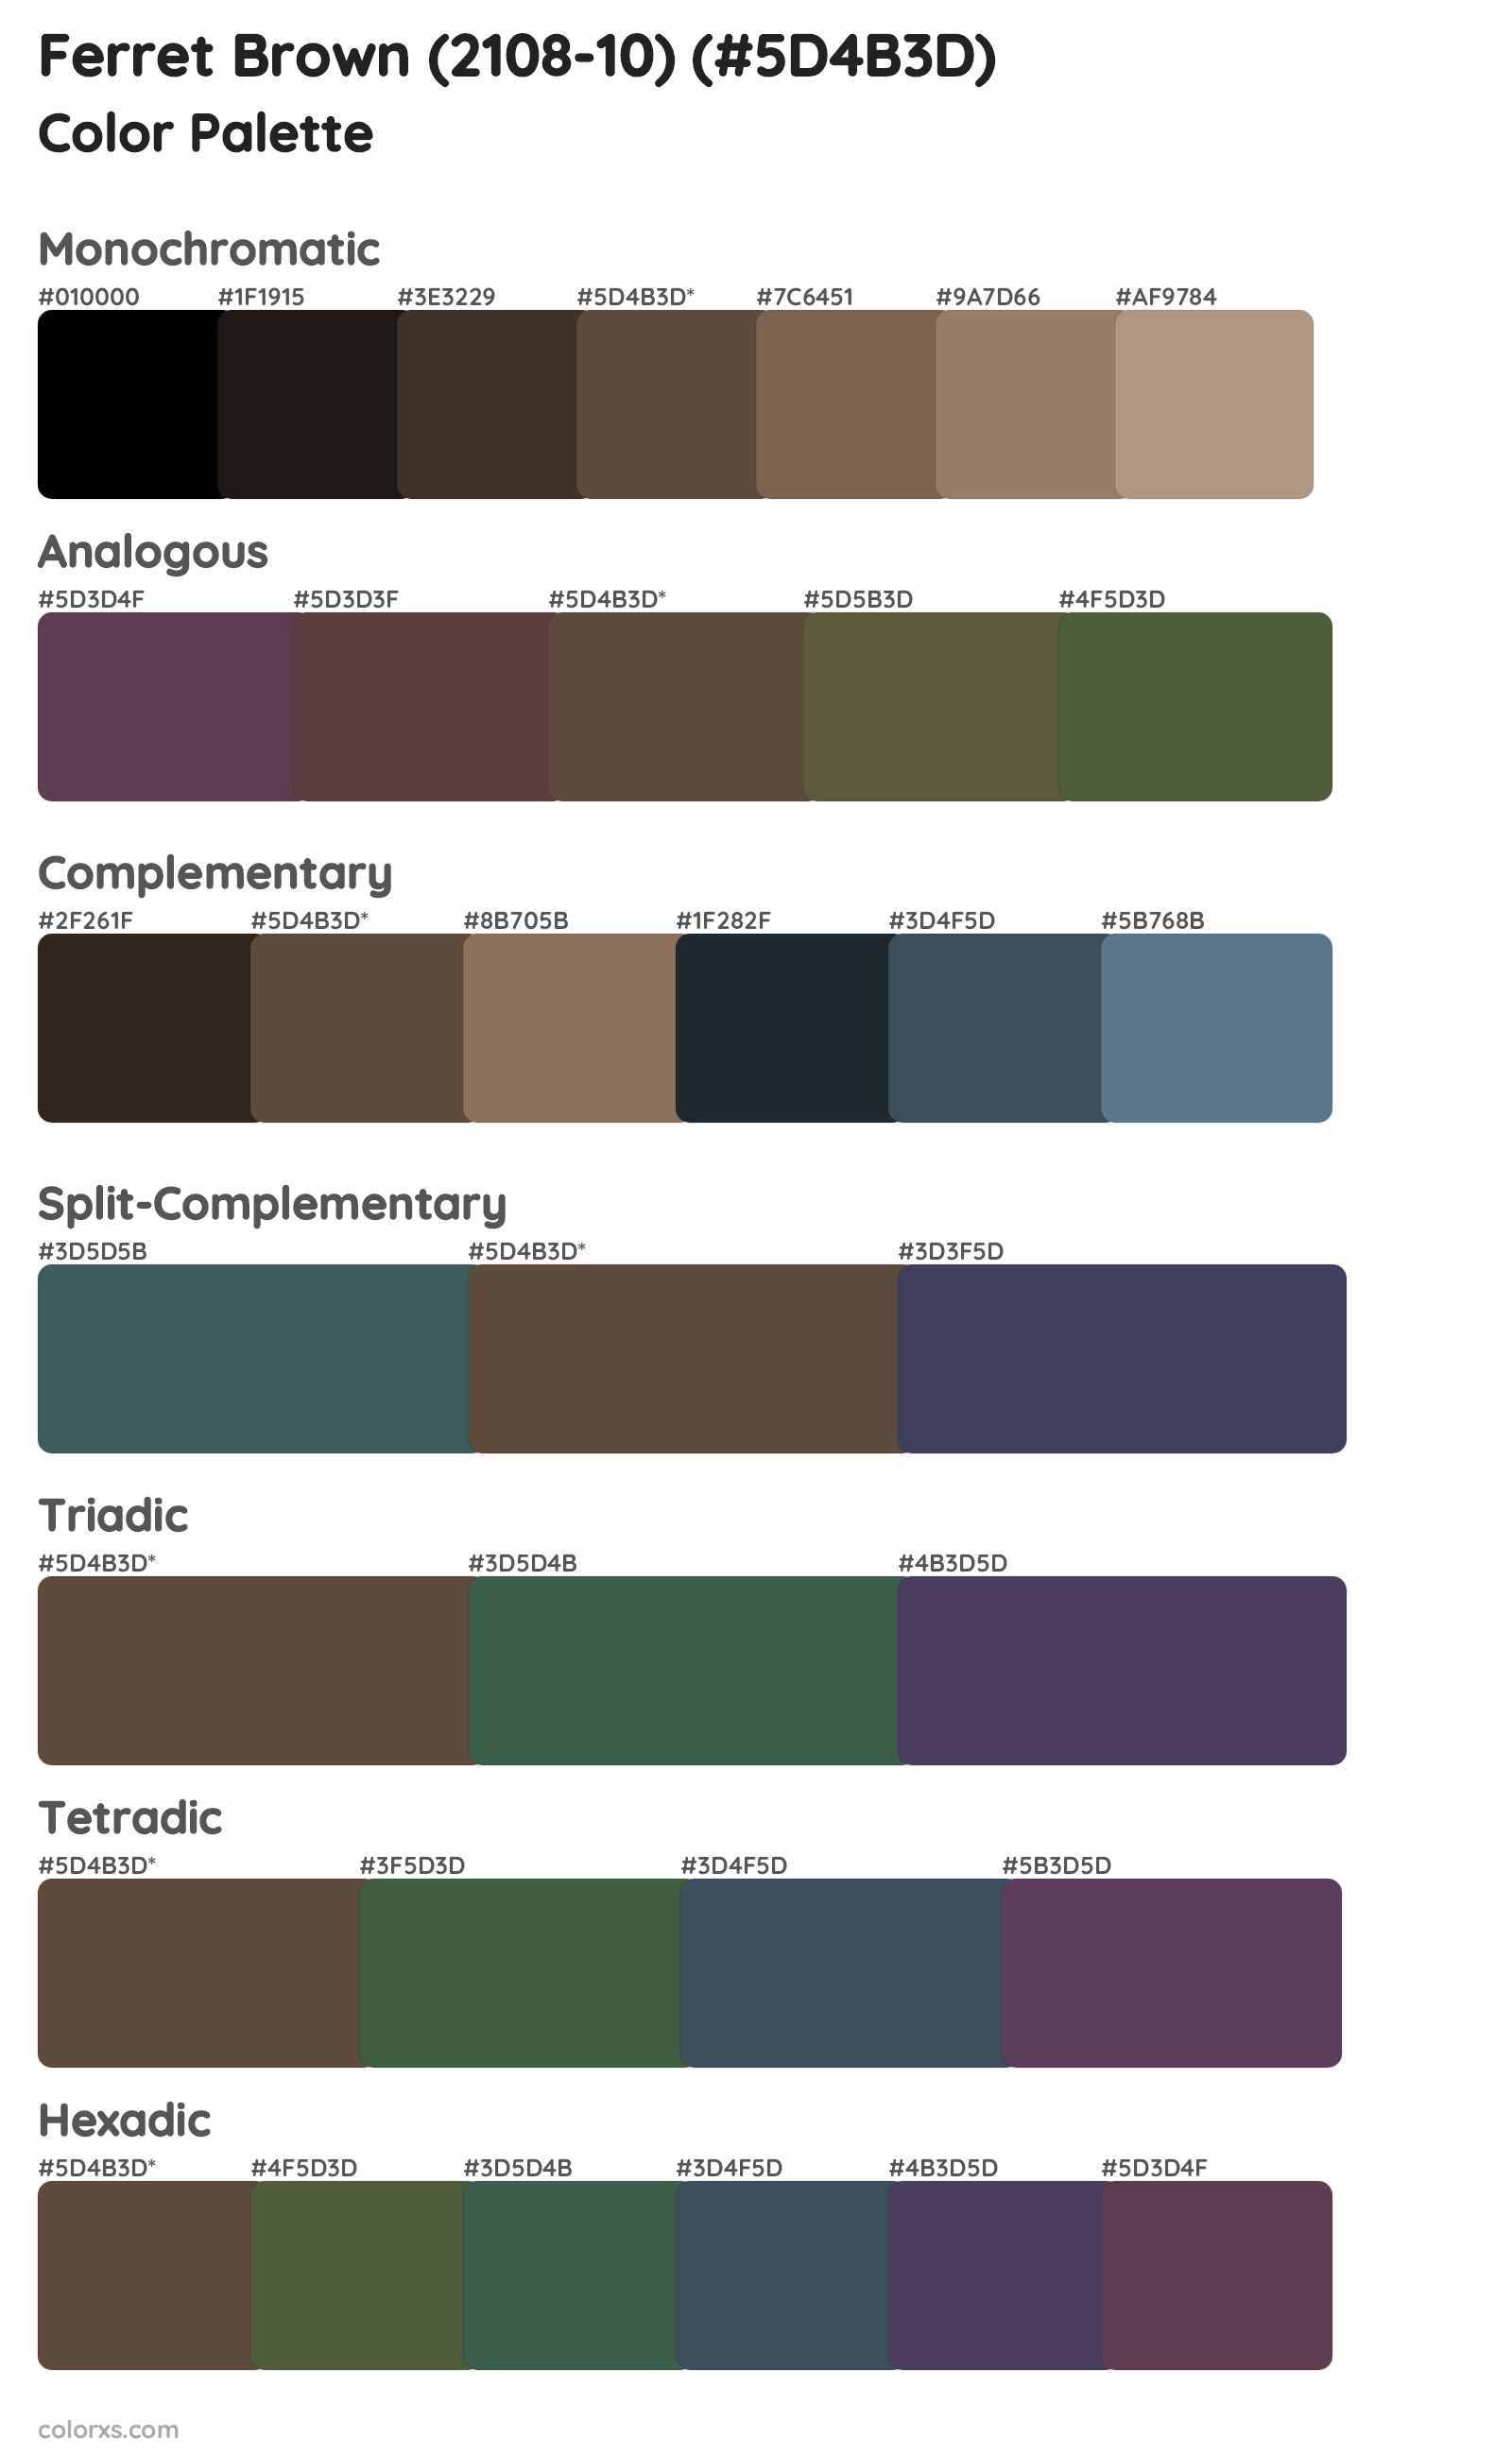 Ferret Brown (2108-10) Color Scheme Palettes